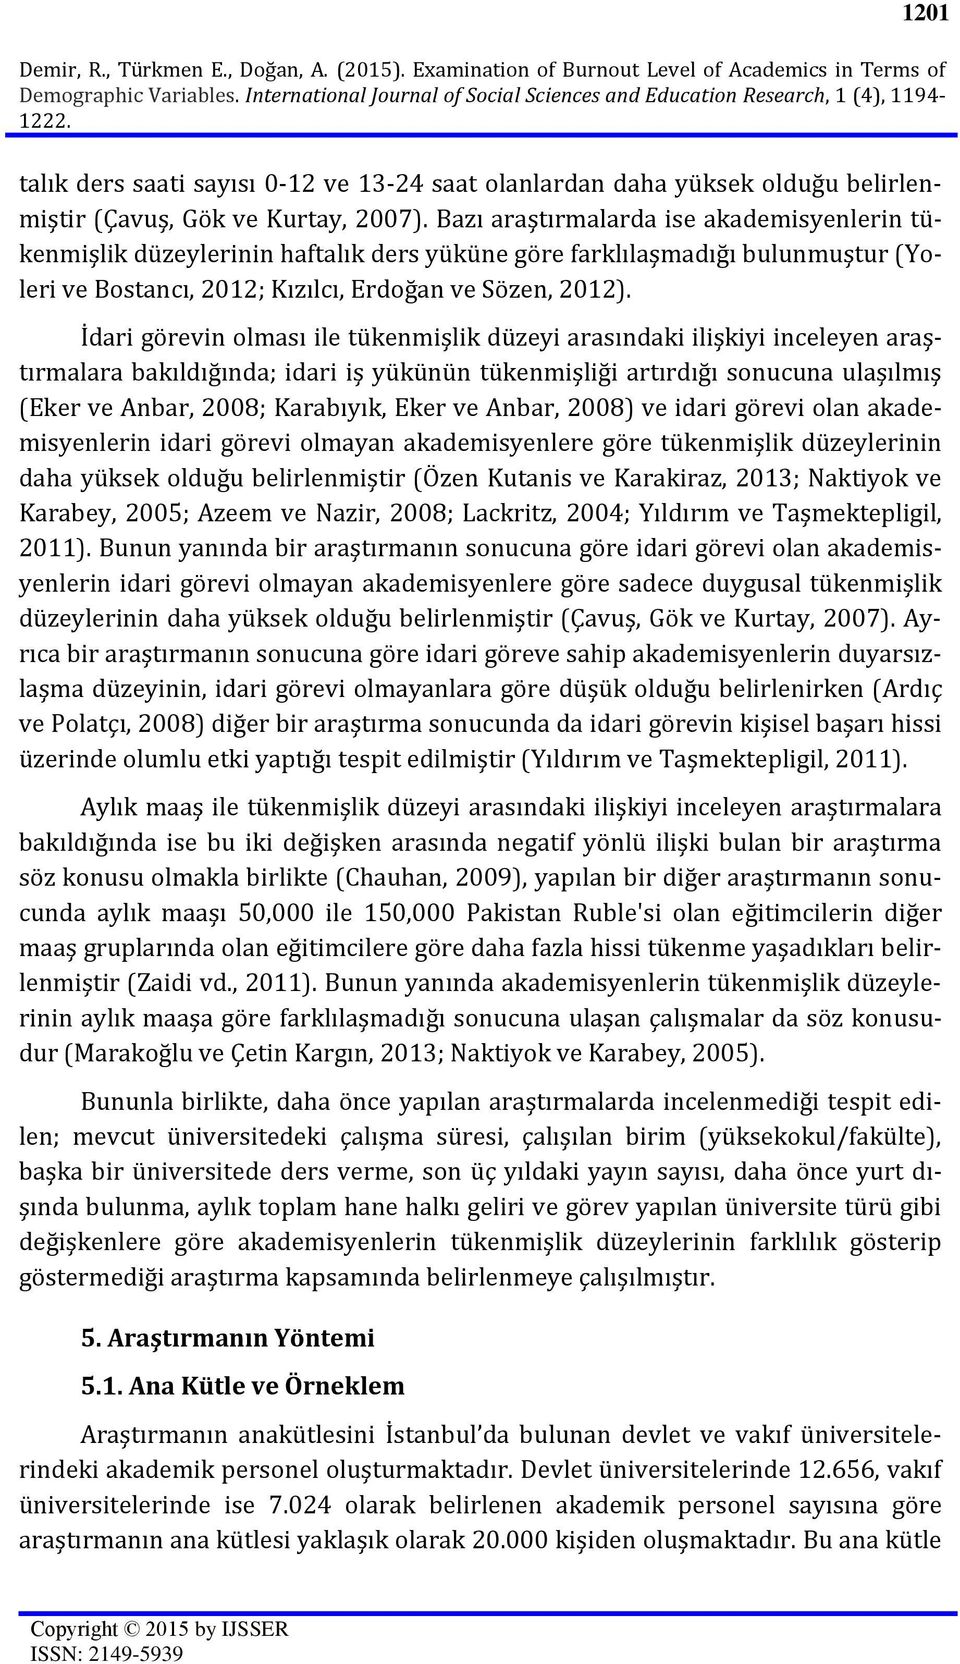 Bazı araştırmalarda ise akademisyenlerin tükenmişlik düzeylerinin haftalık ders yüküne göre farklılaşmadığı bulunmuştur (Yoleri ve Bostancı, 2012; Kızılcı, Erdoğan ve Sözen, 2012).